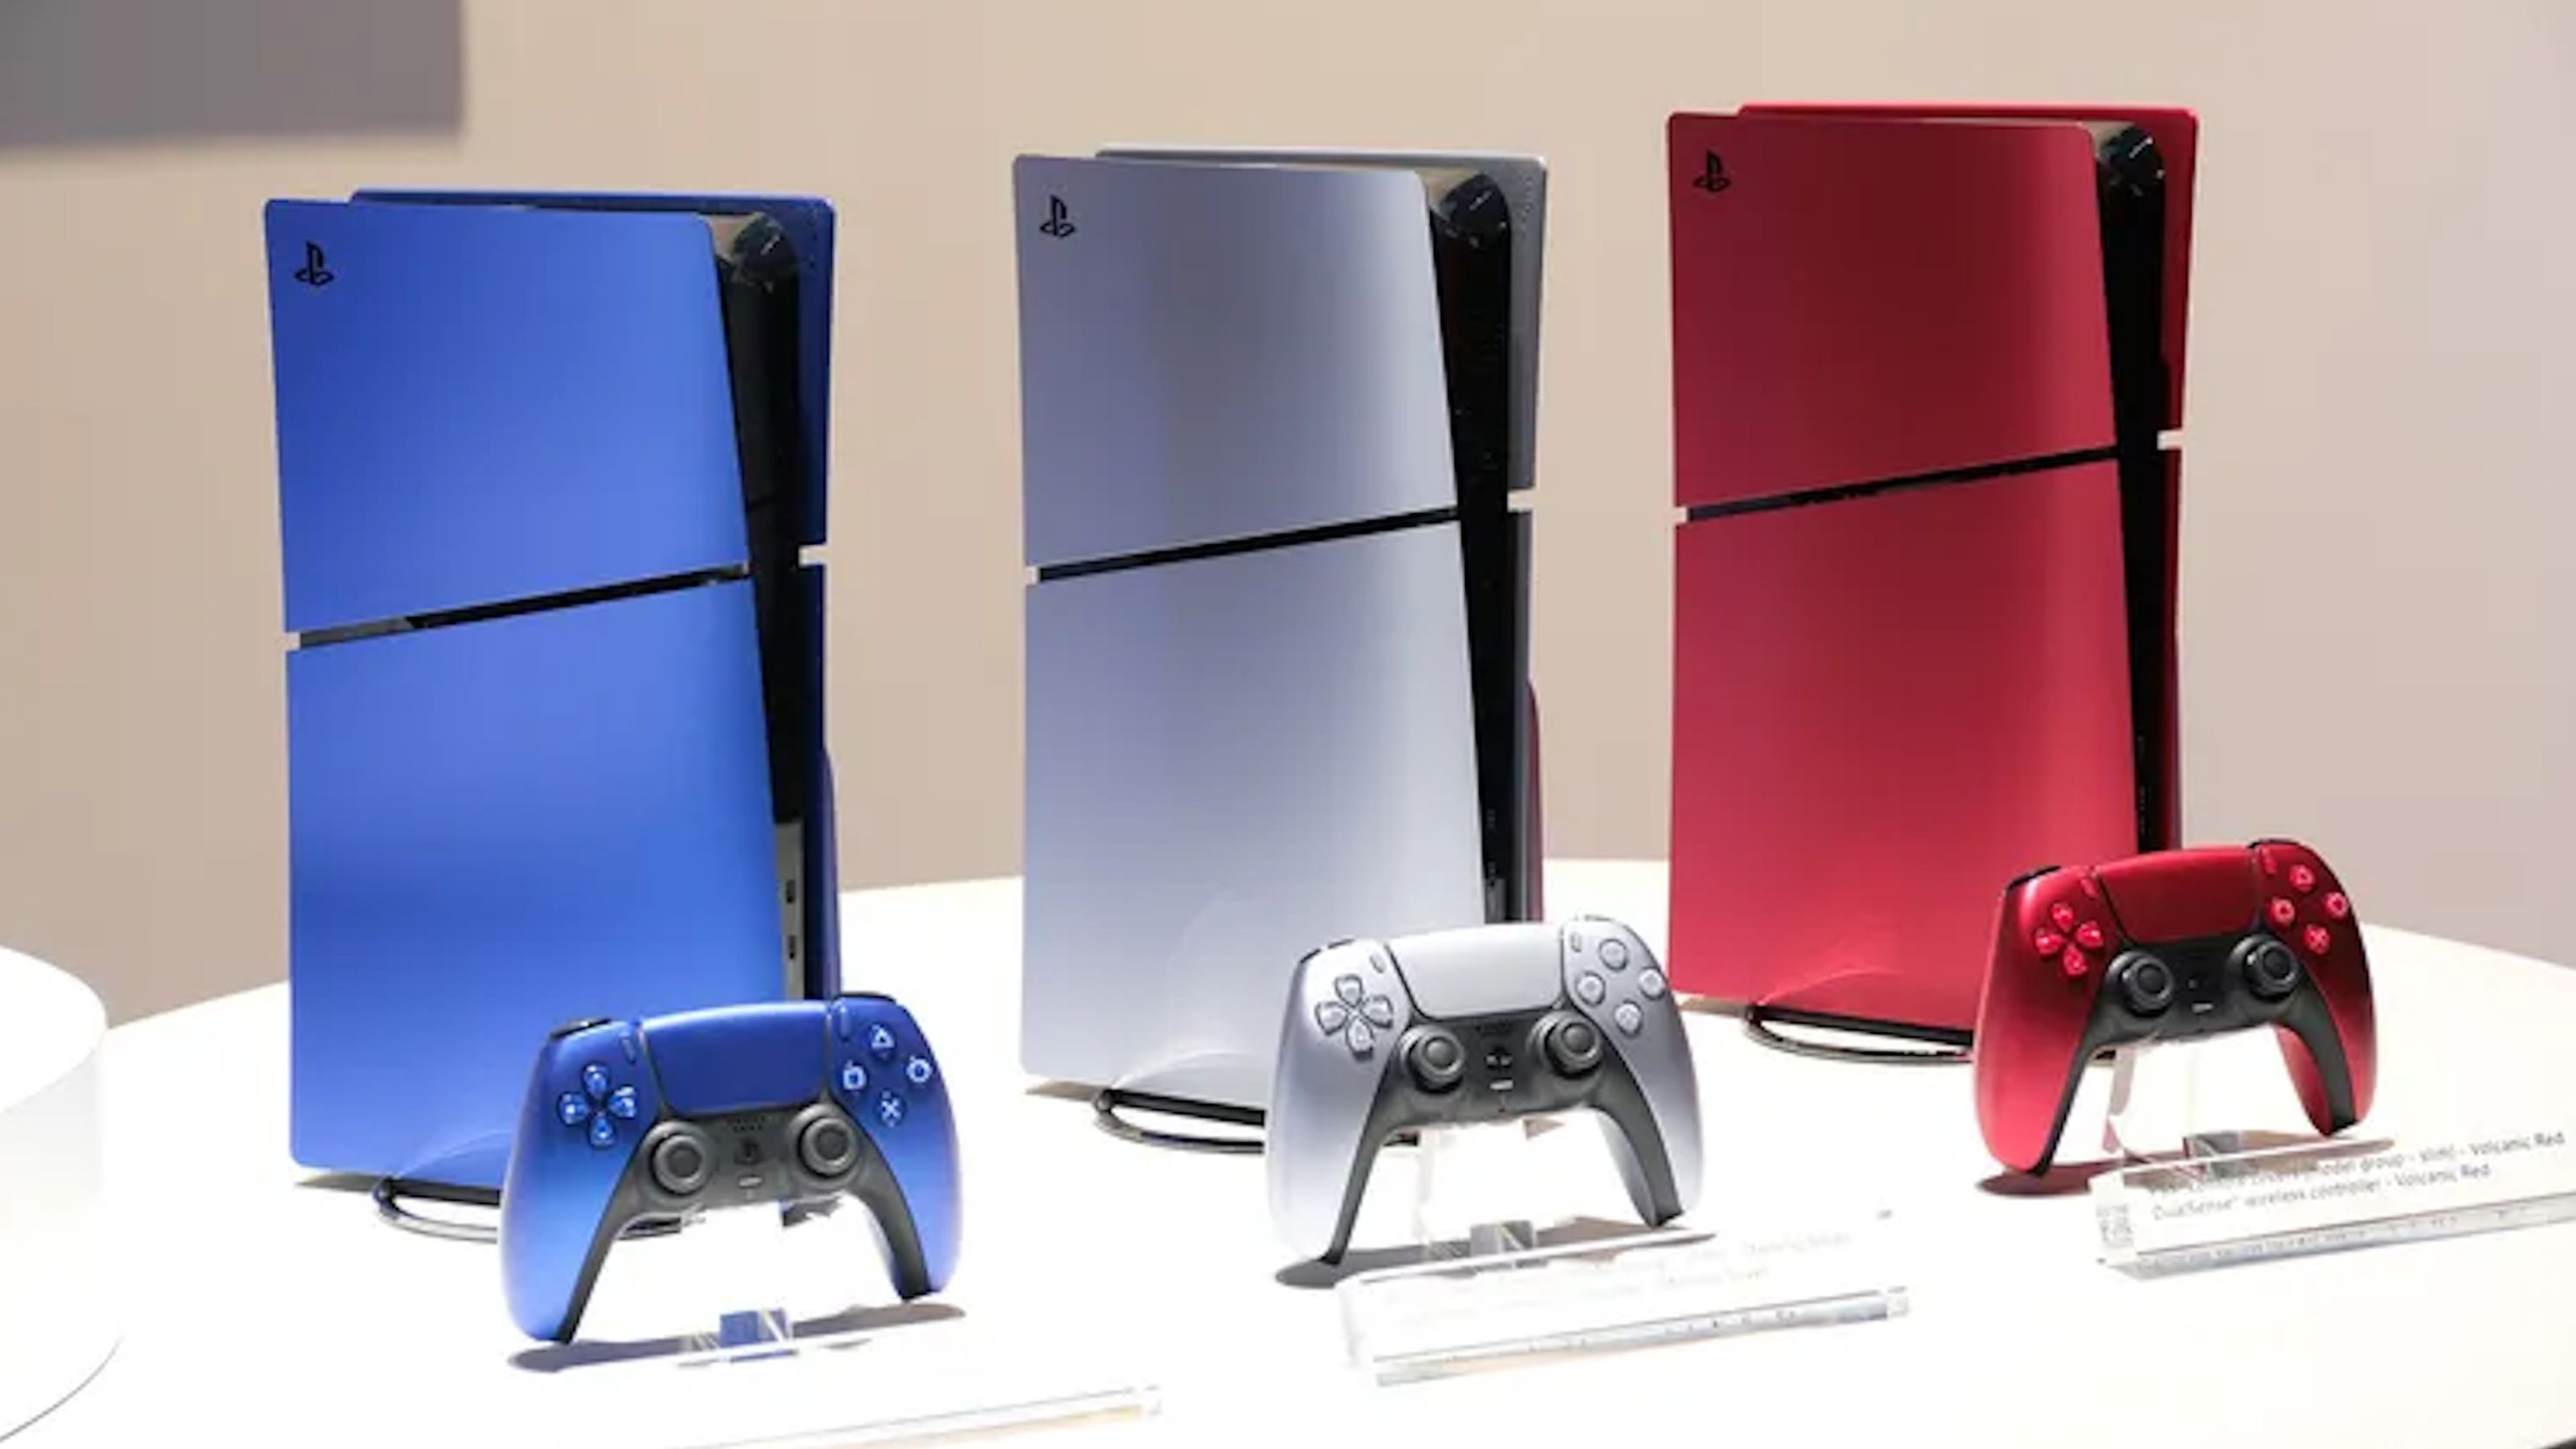 Carcasa Videoconsola PlayStation 5 PS5 Roja SONY